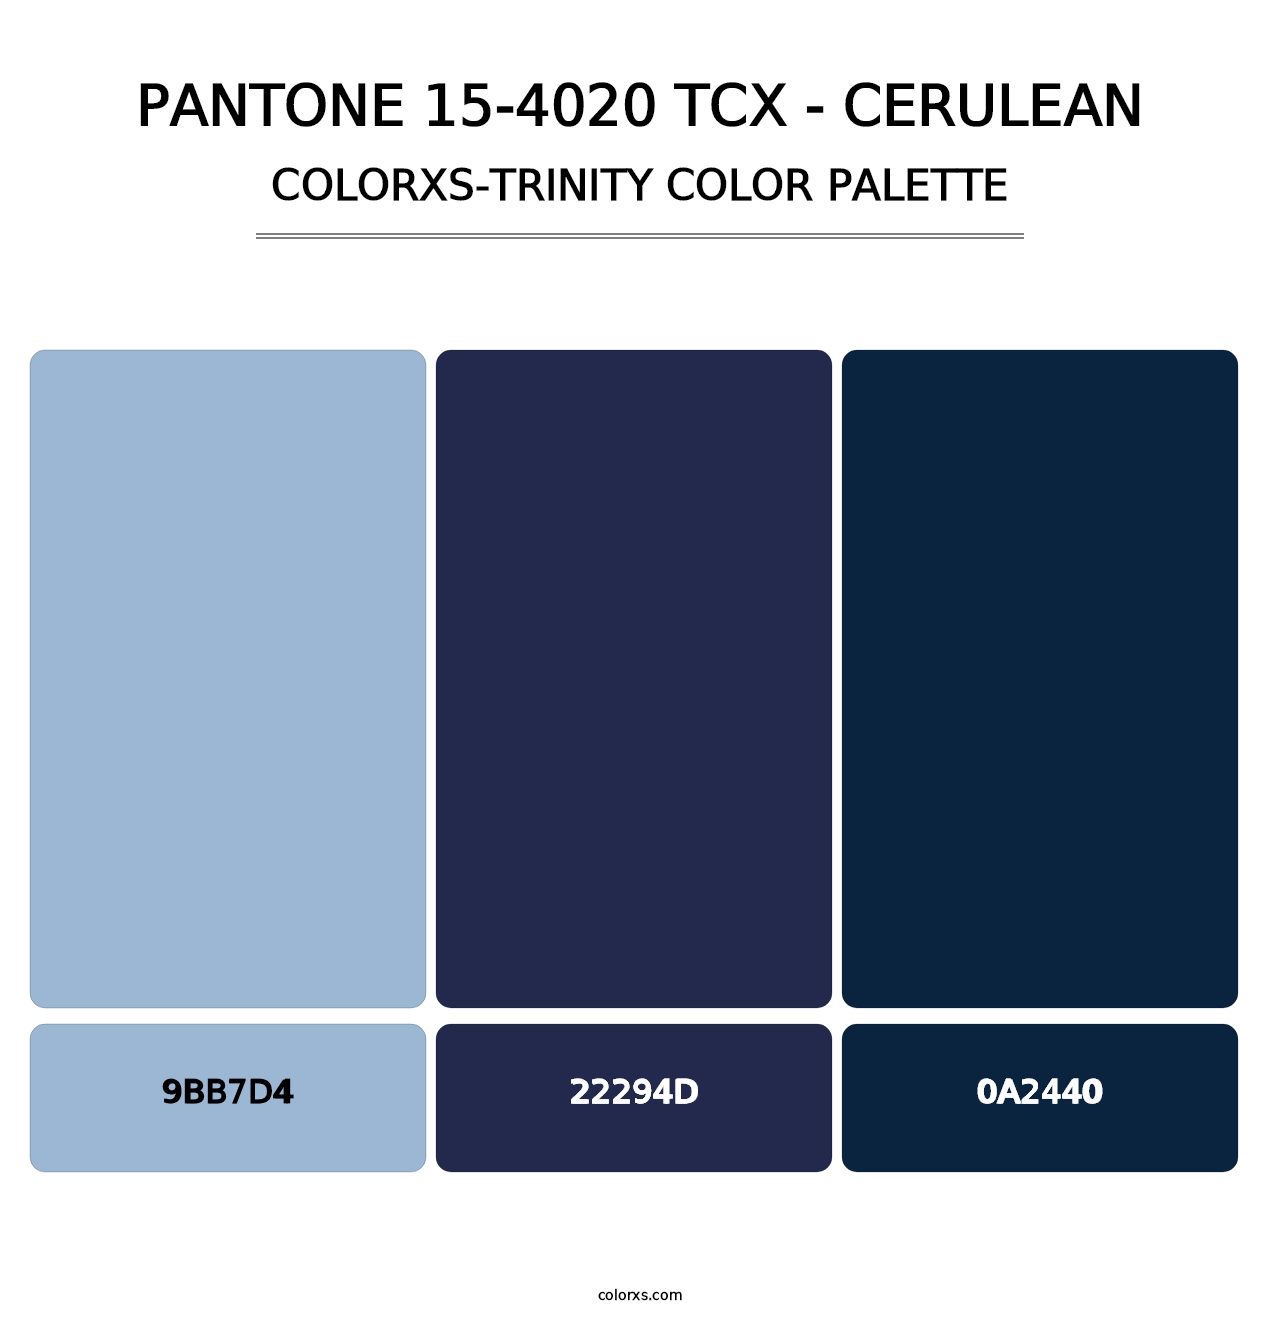 PANTONE 15-4020 TCX - Cerulean - Colorxs Trinity Palette